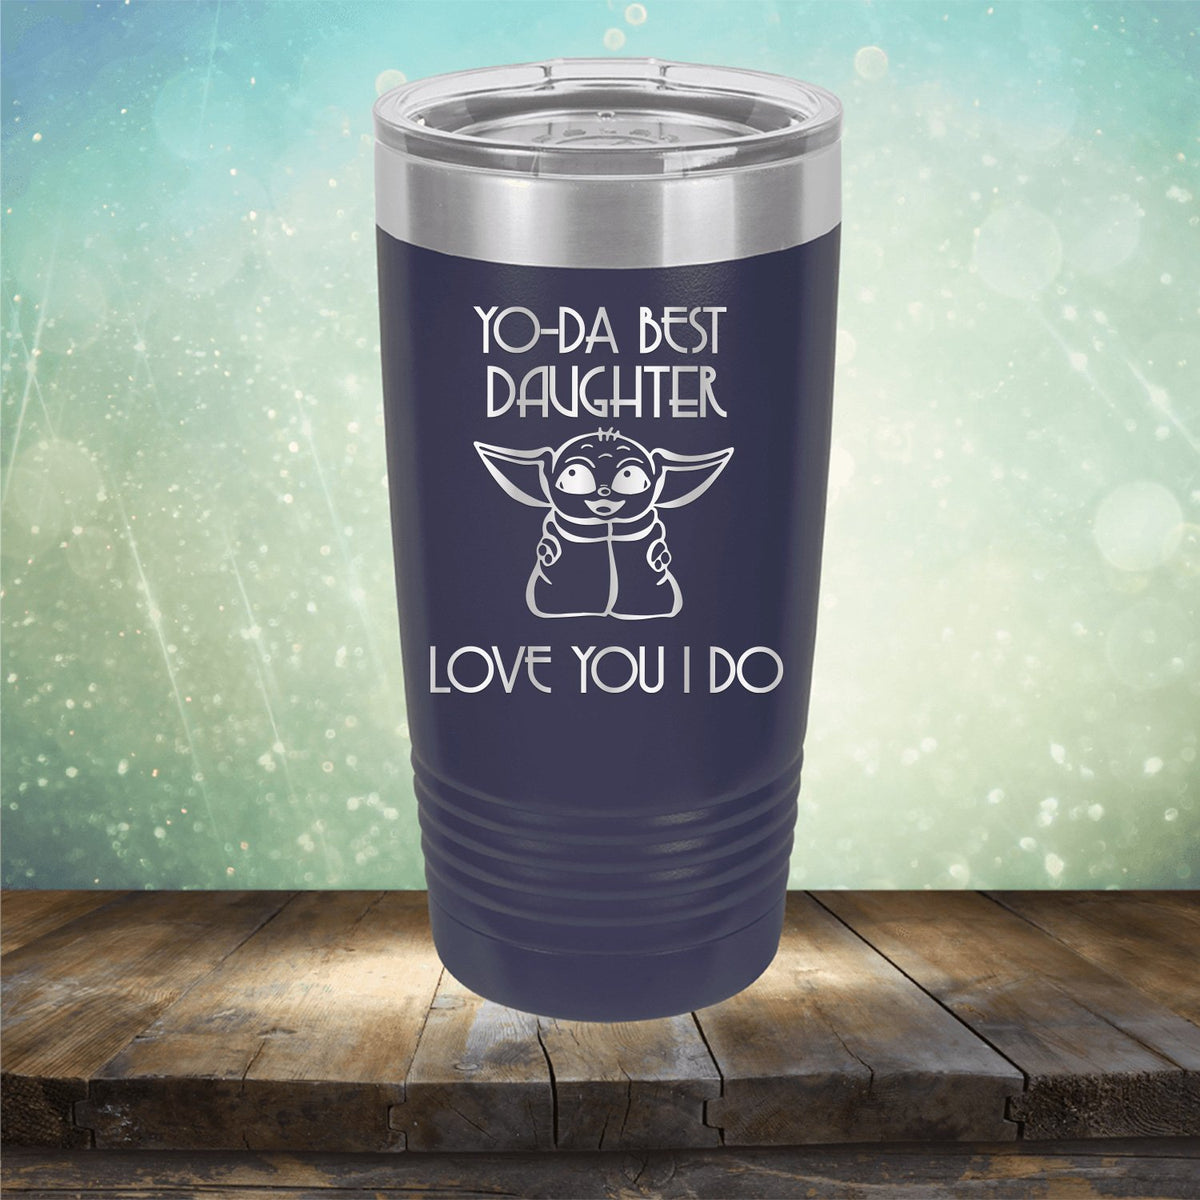 Yo-Da Best Daughter Love You I Do - Laser Etched Tumbler Mug